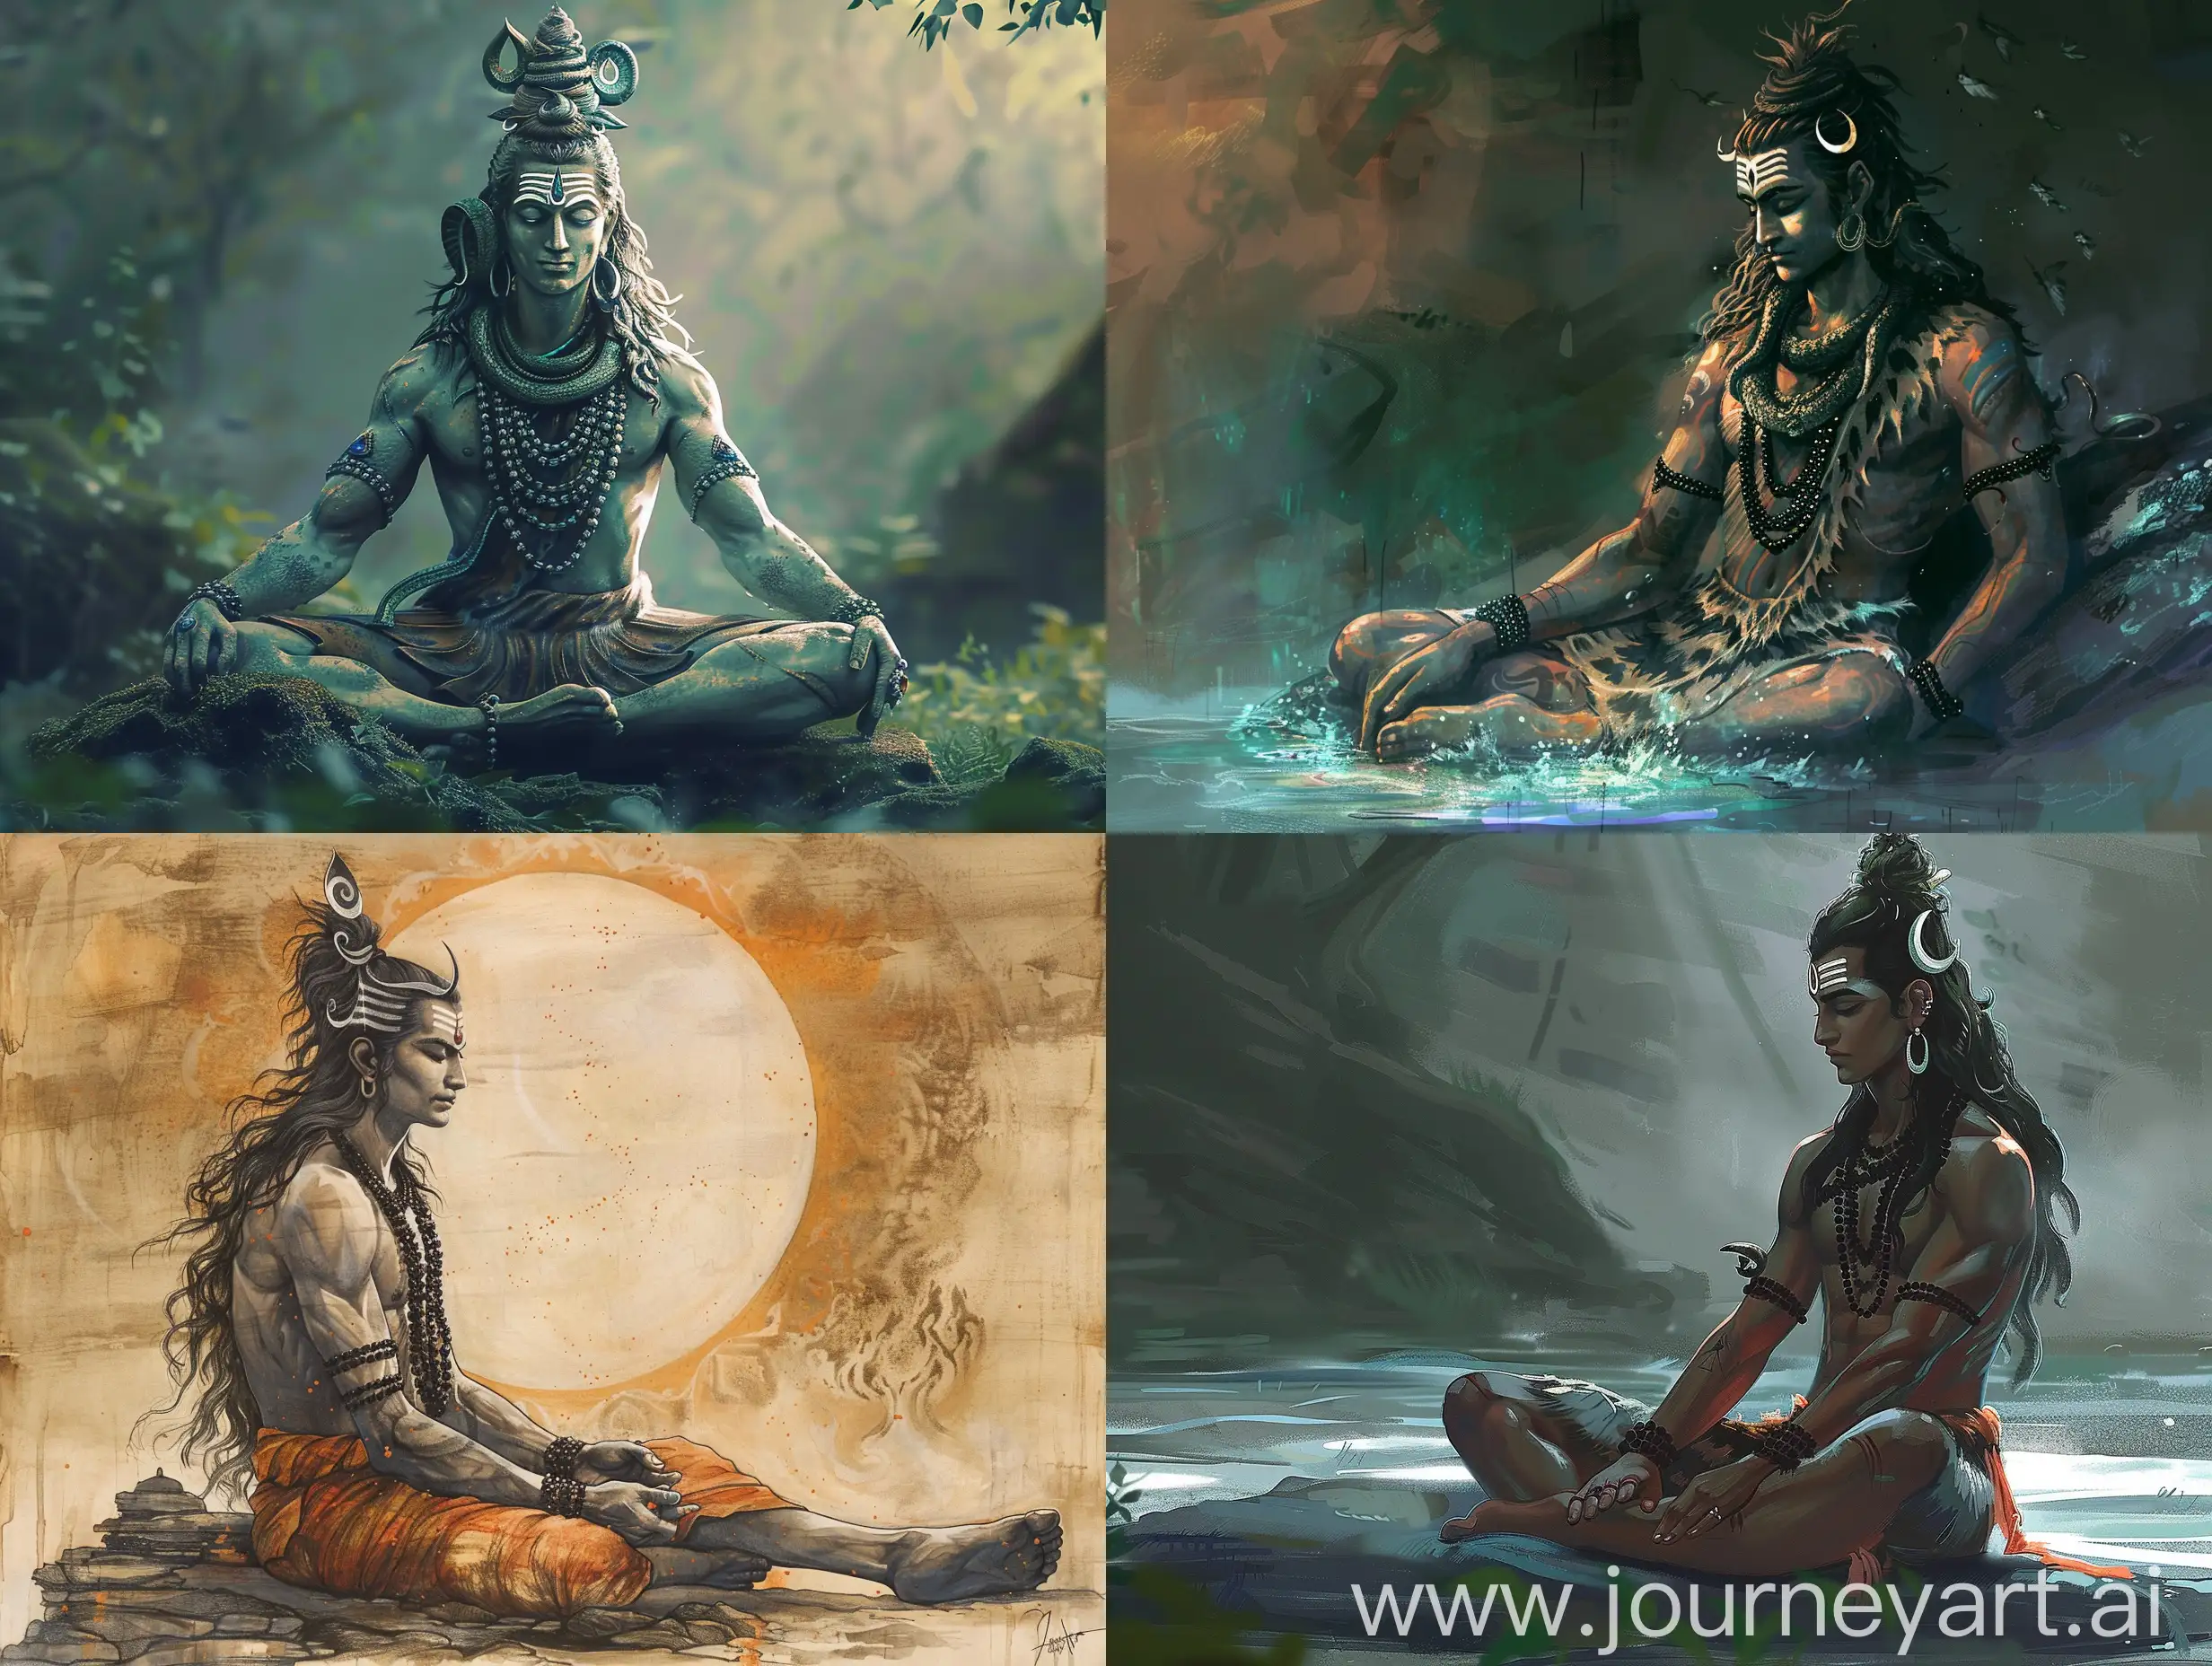 Mystical-Shiva-Statue-in-a-Serene-Setting